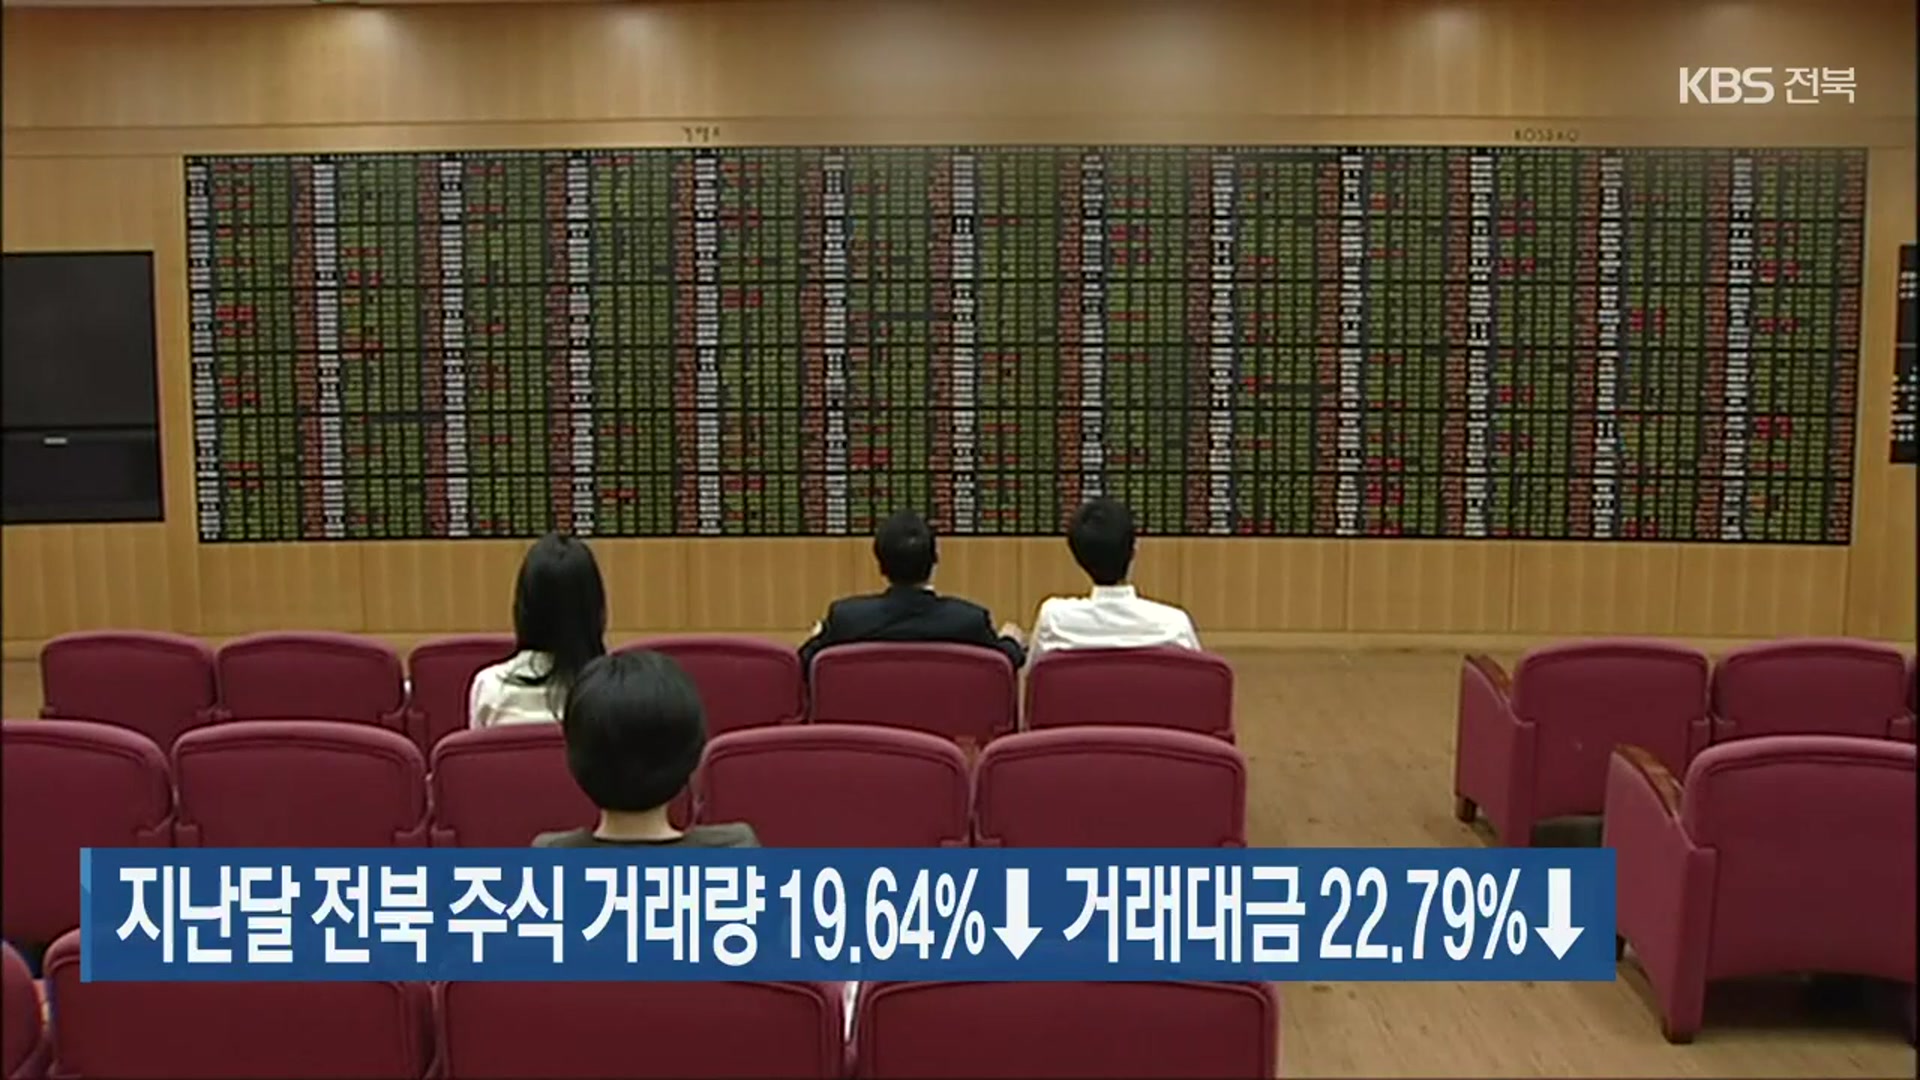 지난달 전북 주식 거래량 19.64%↓·거래대금 22.79%↓